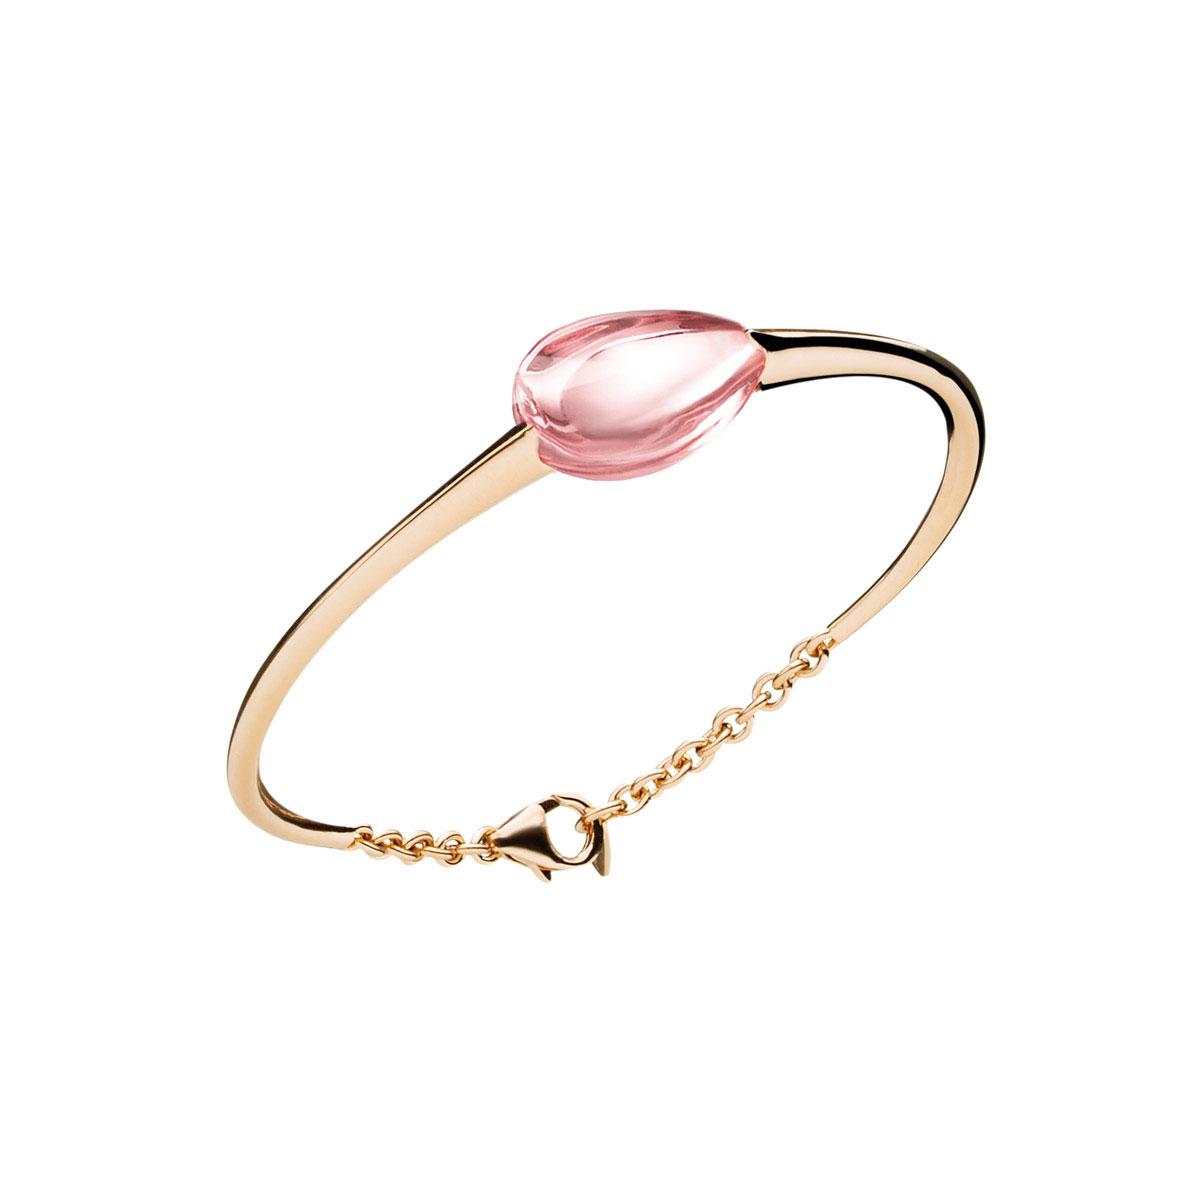 Baccarat Crystal Fleurs De Psydelic Gold Vermeil and Light Pink Small Bracelet